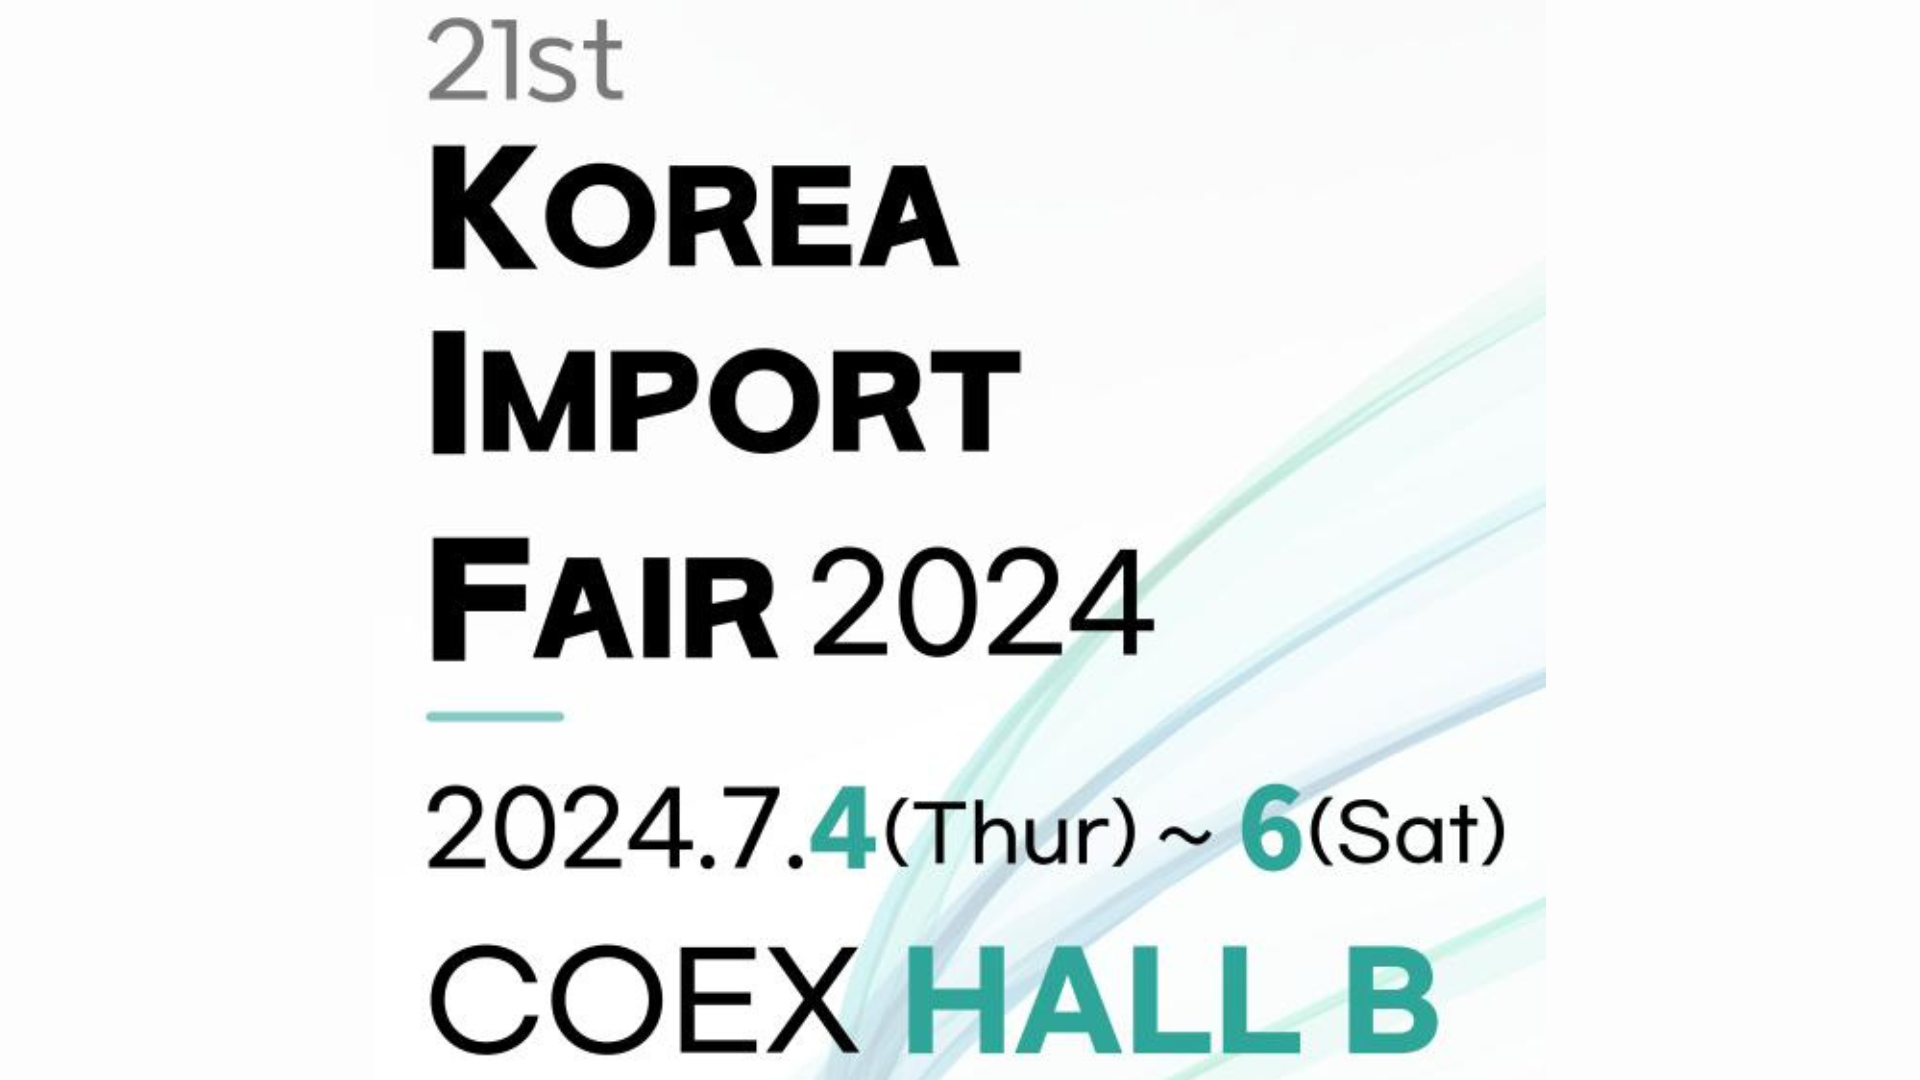 Sahibkarlar "Korea Import Fair 2024" sərgisinə dəvət olunurlar